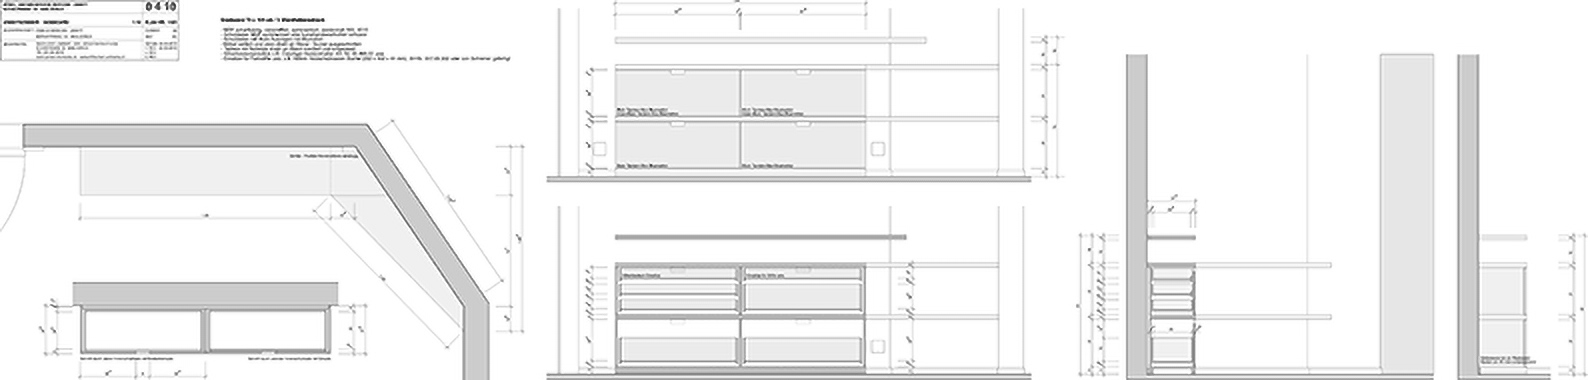 Abbildung Plan Einbauten Korpus Tisch Sideboard